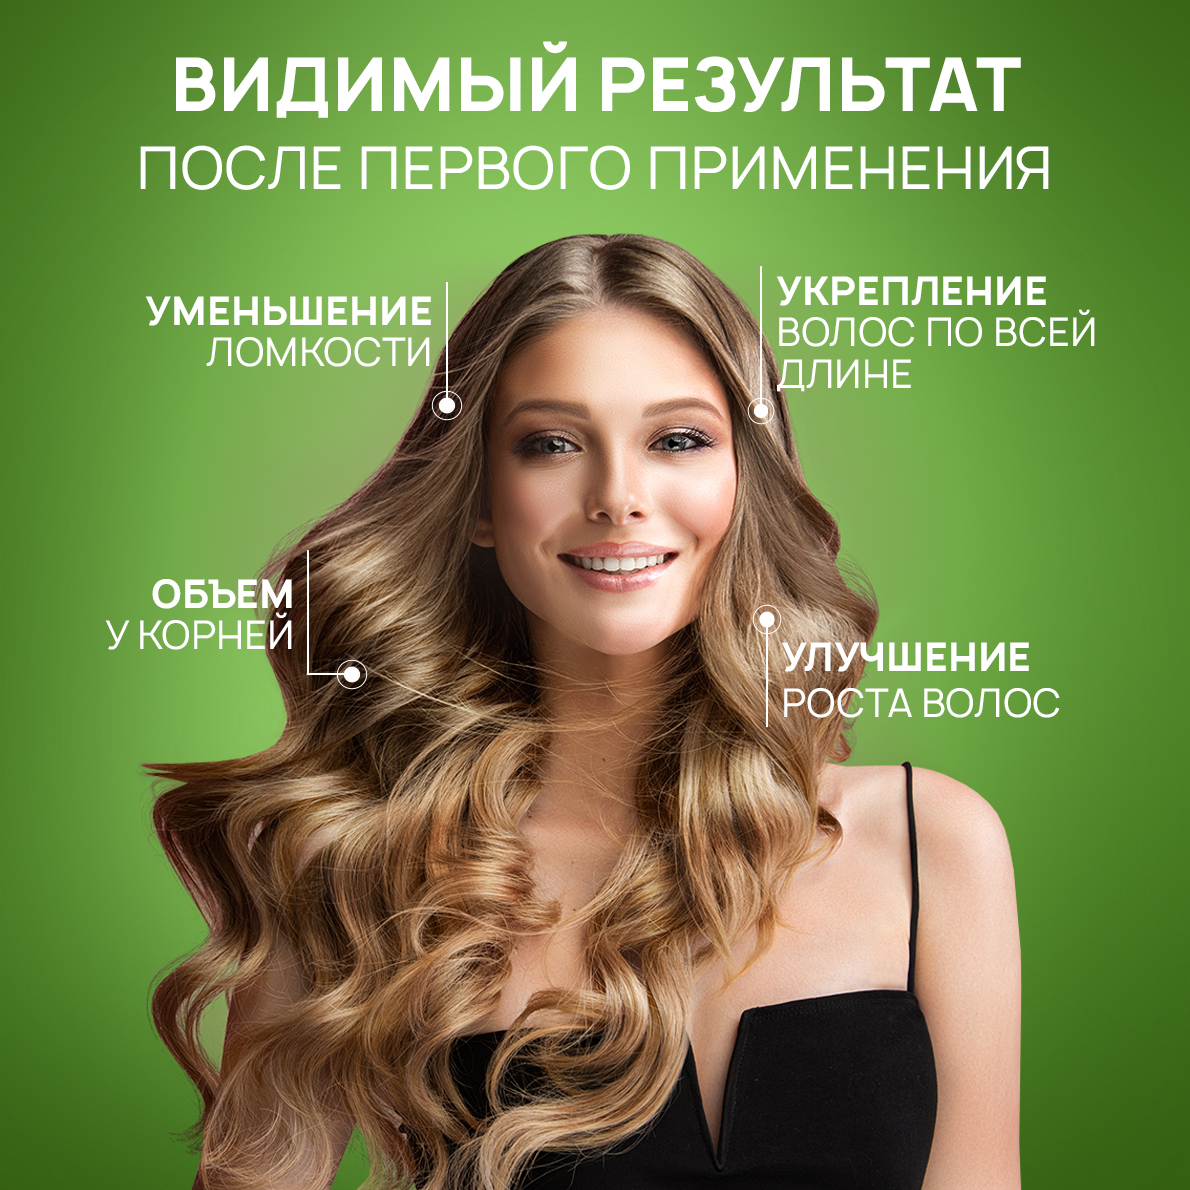 Шампунь для волос SEPTIVIT Premium Frutsy огуречный лимонад 1 л - фото 4